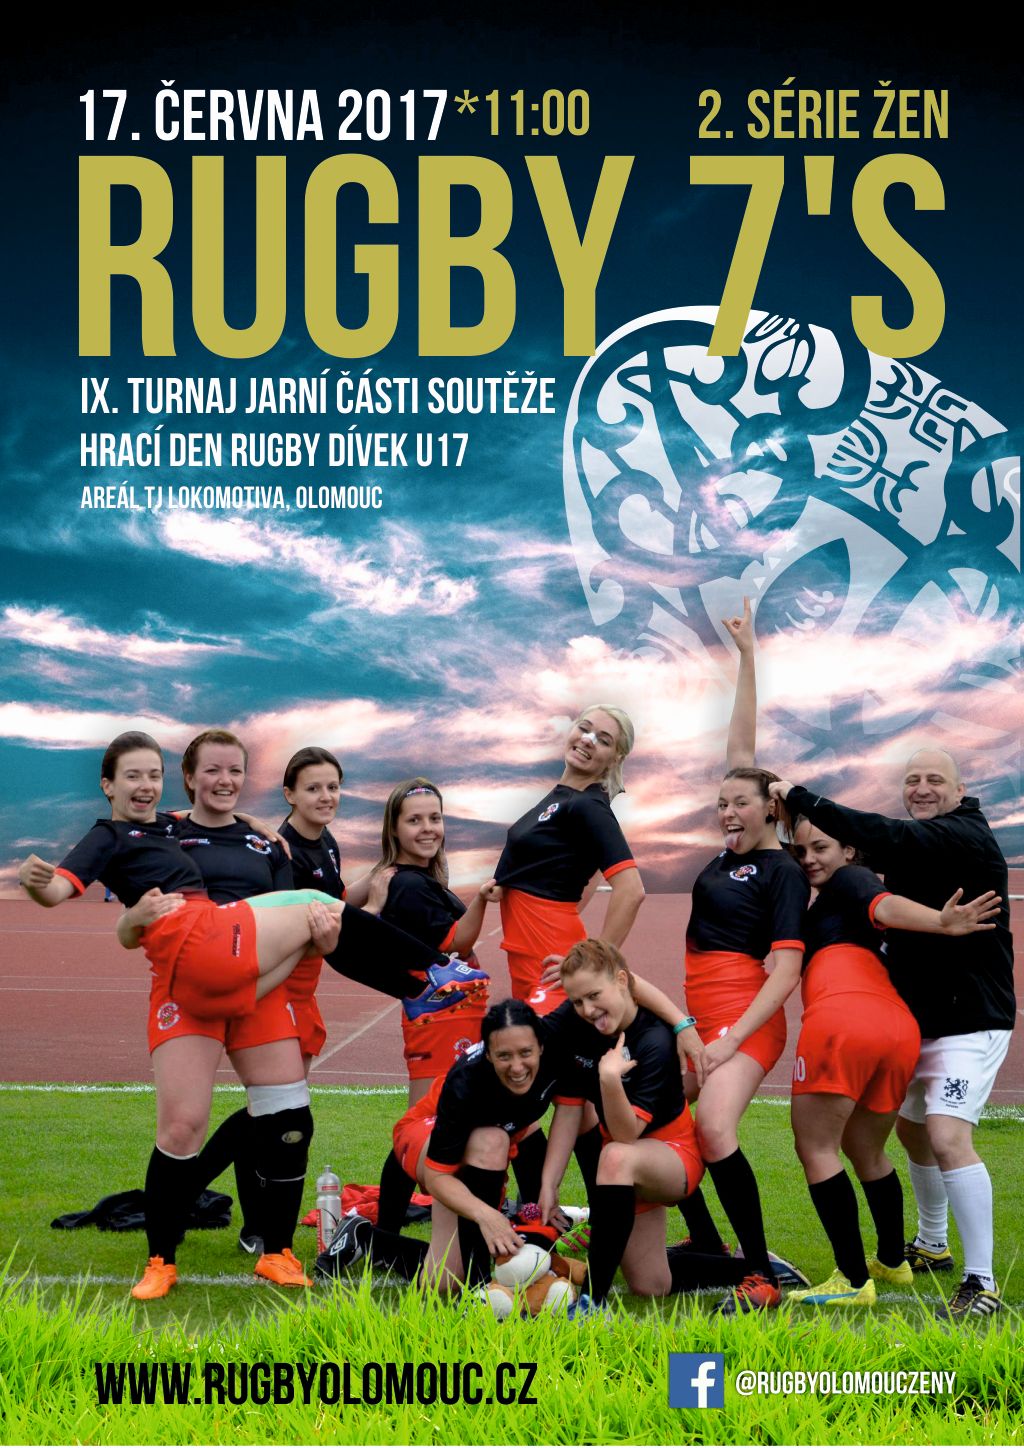 Turnaj 2. serie 7´s rugby žen